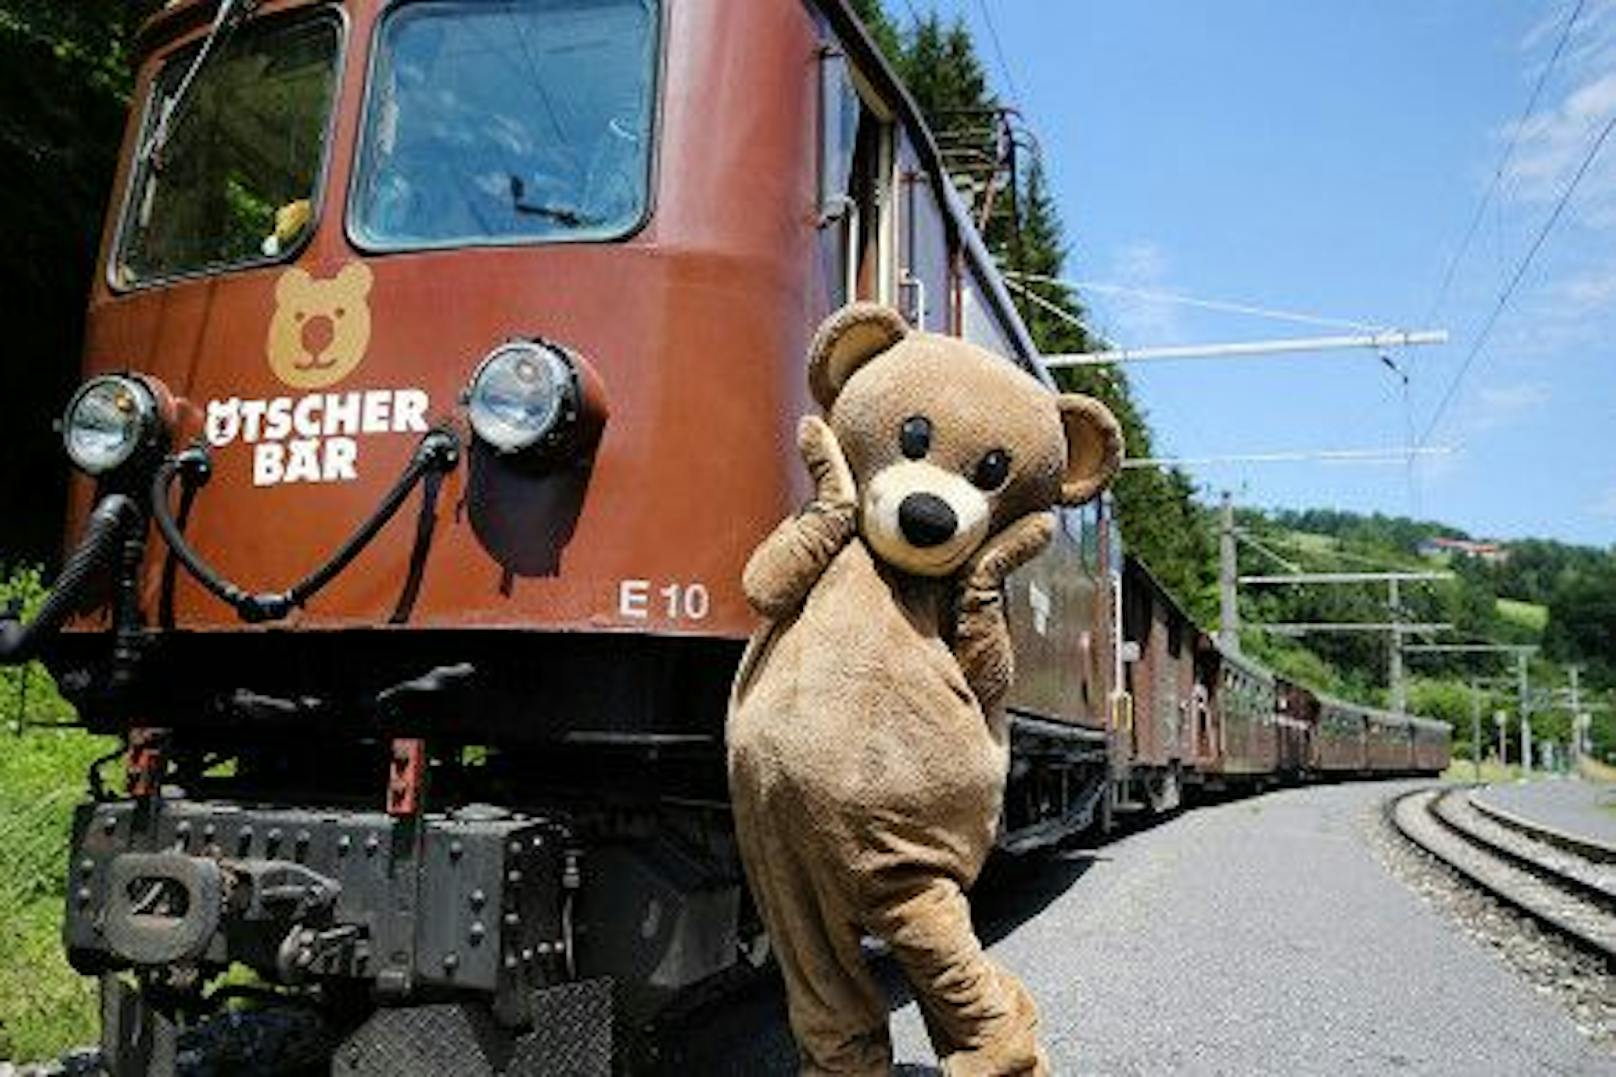 Eine Fahrt mit dem Ötscherbär-Zug ist ein Highlight für Kinder.